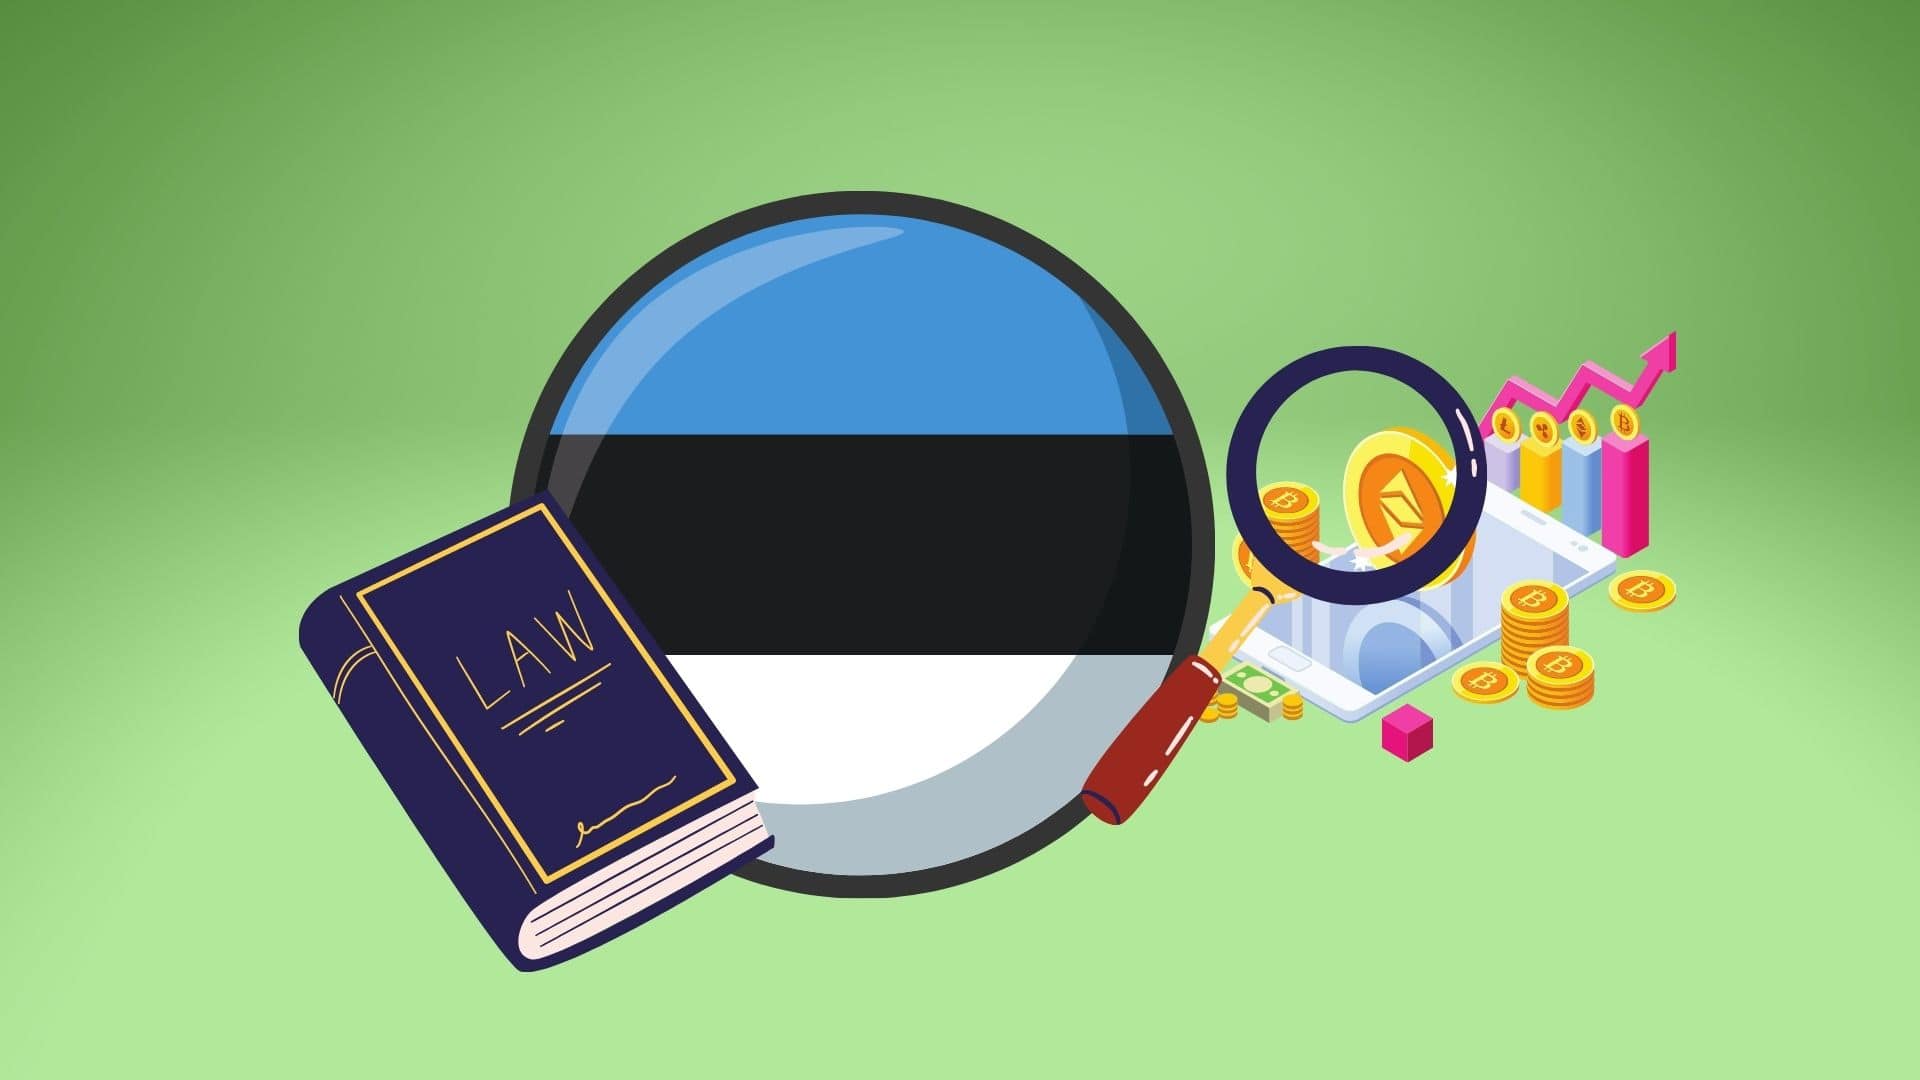 В Эстонии приняли закон о противодействии отмыванию средств. Чем он грозит криптовалютной сфере?